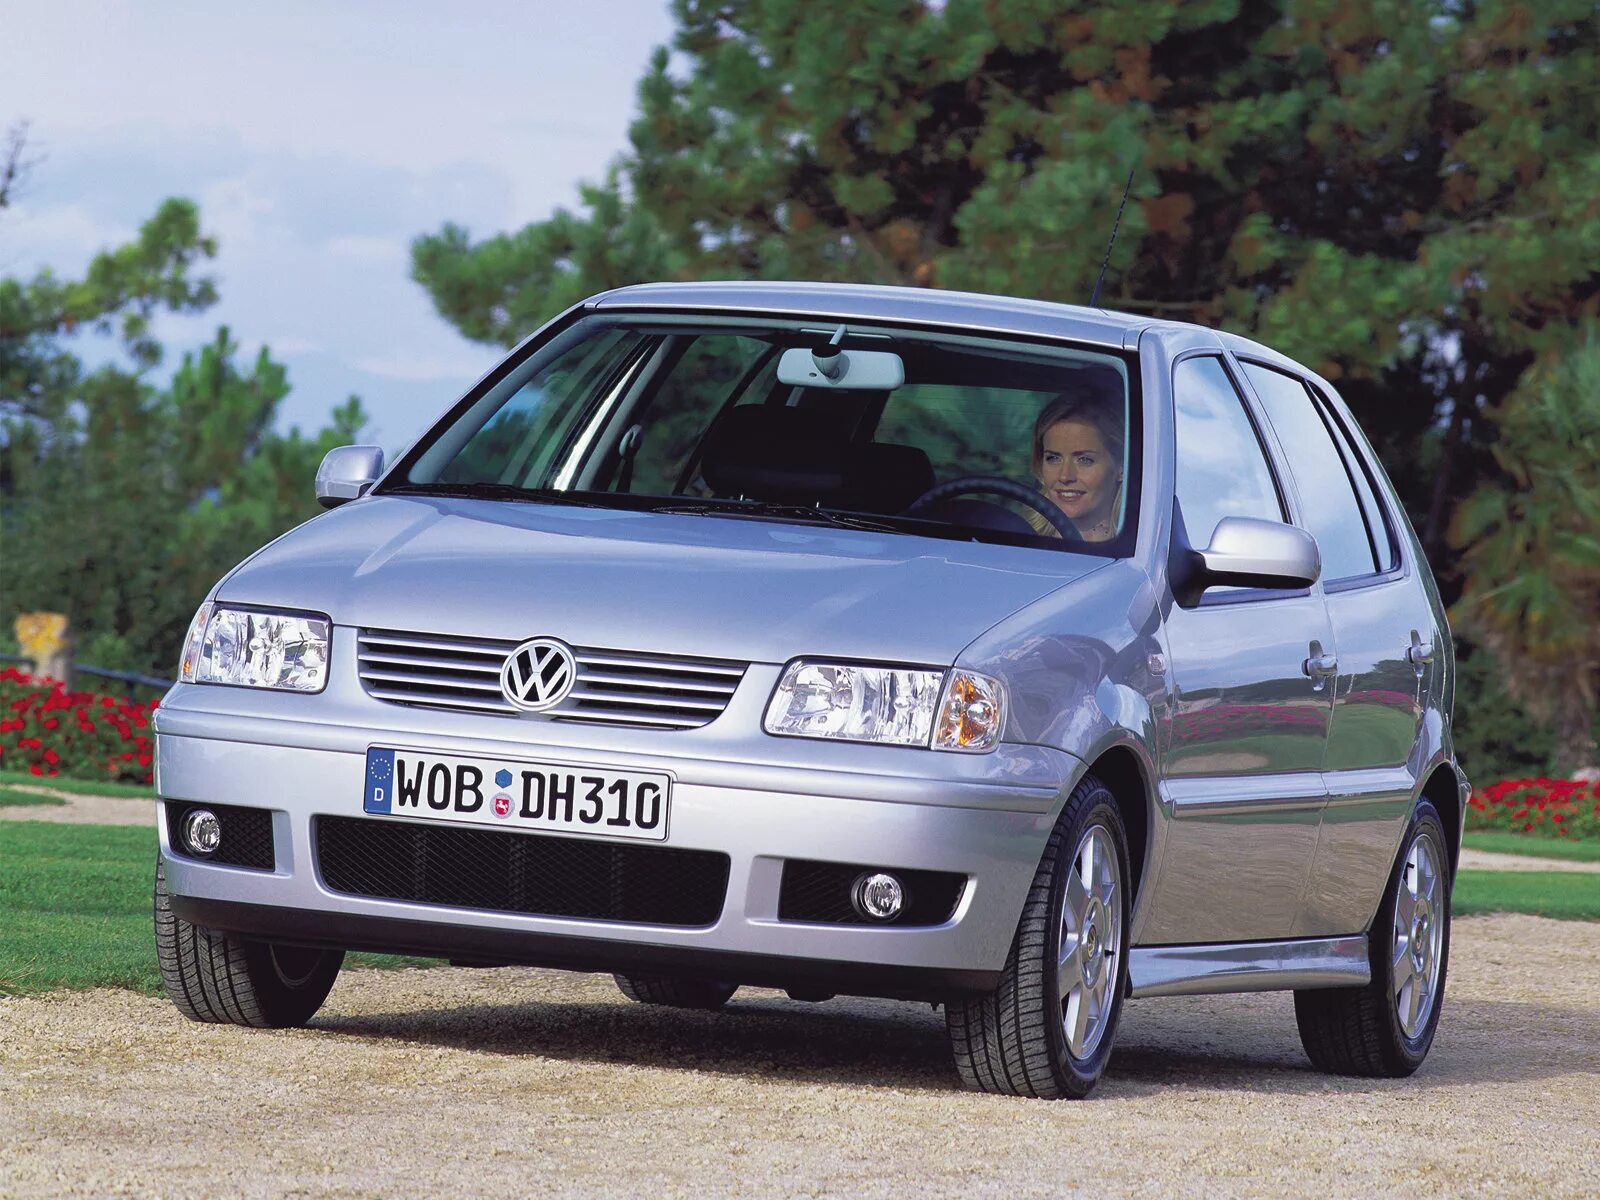 Фольксваген поло 3 поколение. Volkswagen Polo 2001 1.4 3 поколение. Фольксваген поло 1999 1.6. Volkswagen Polo 2001 Hatchback. Фольксваген поло 1999 1.4 хэтчбек.